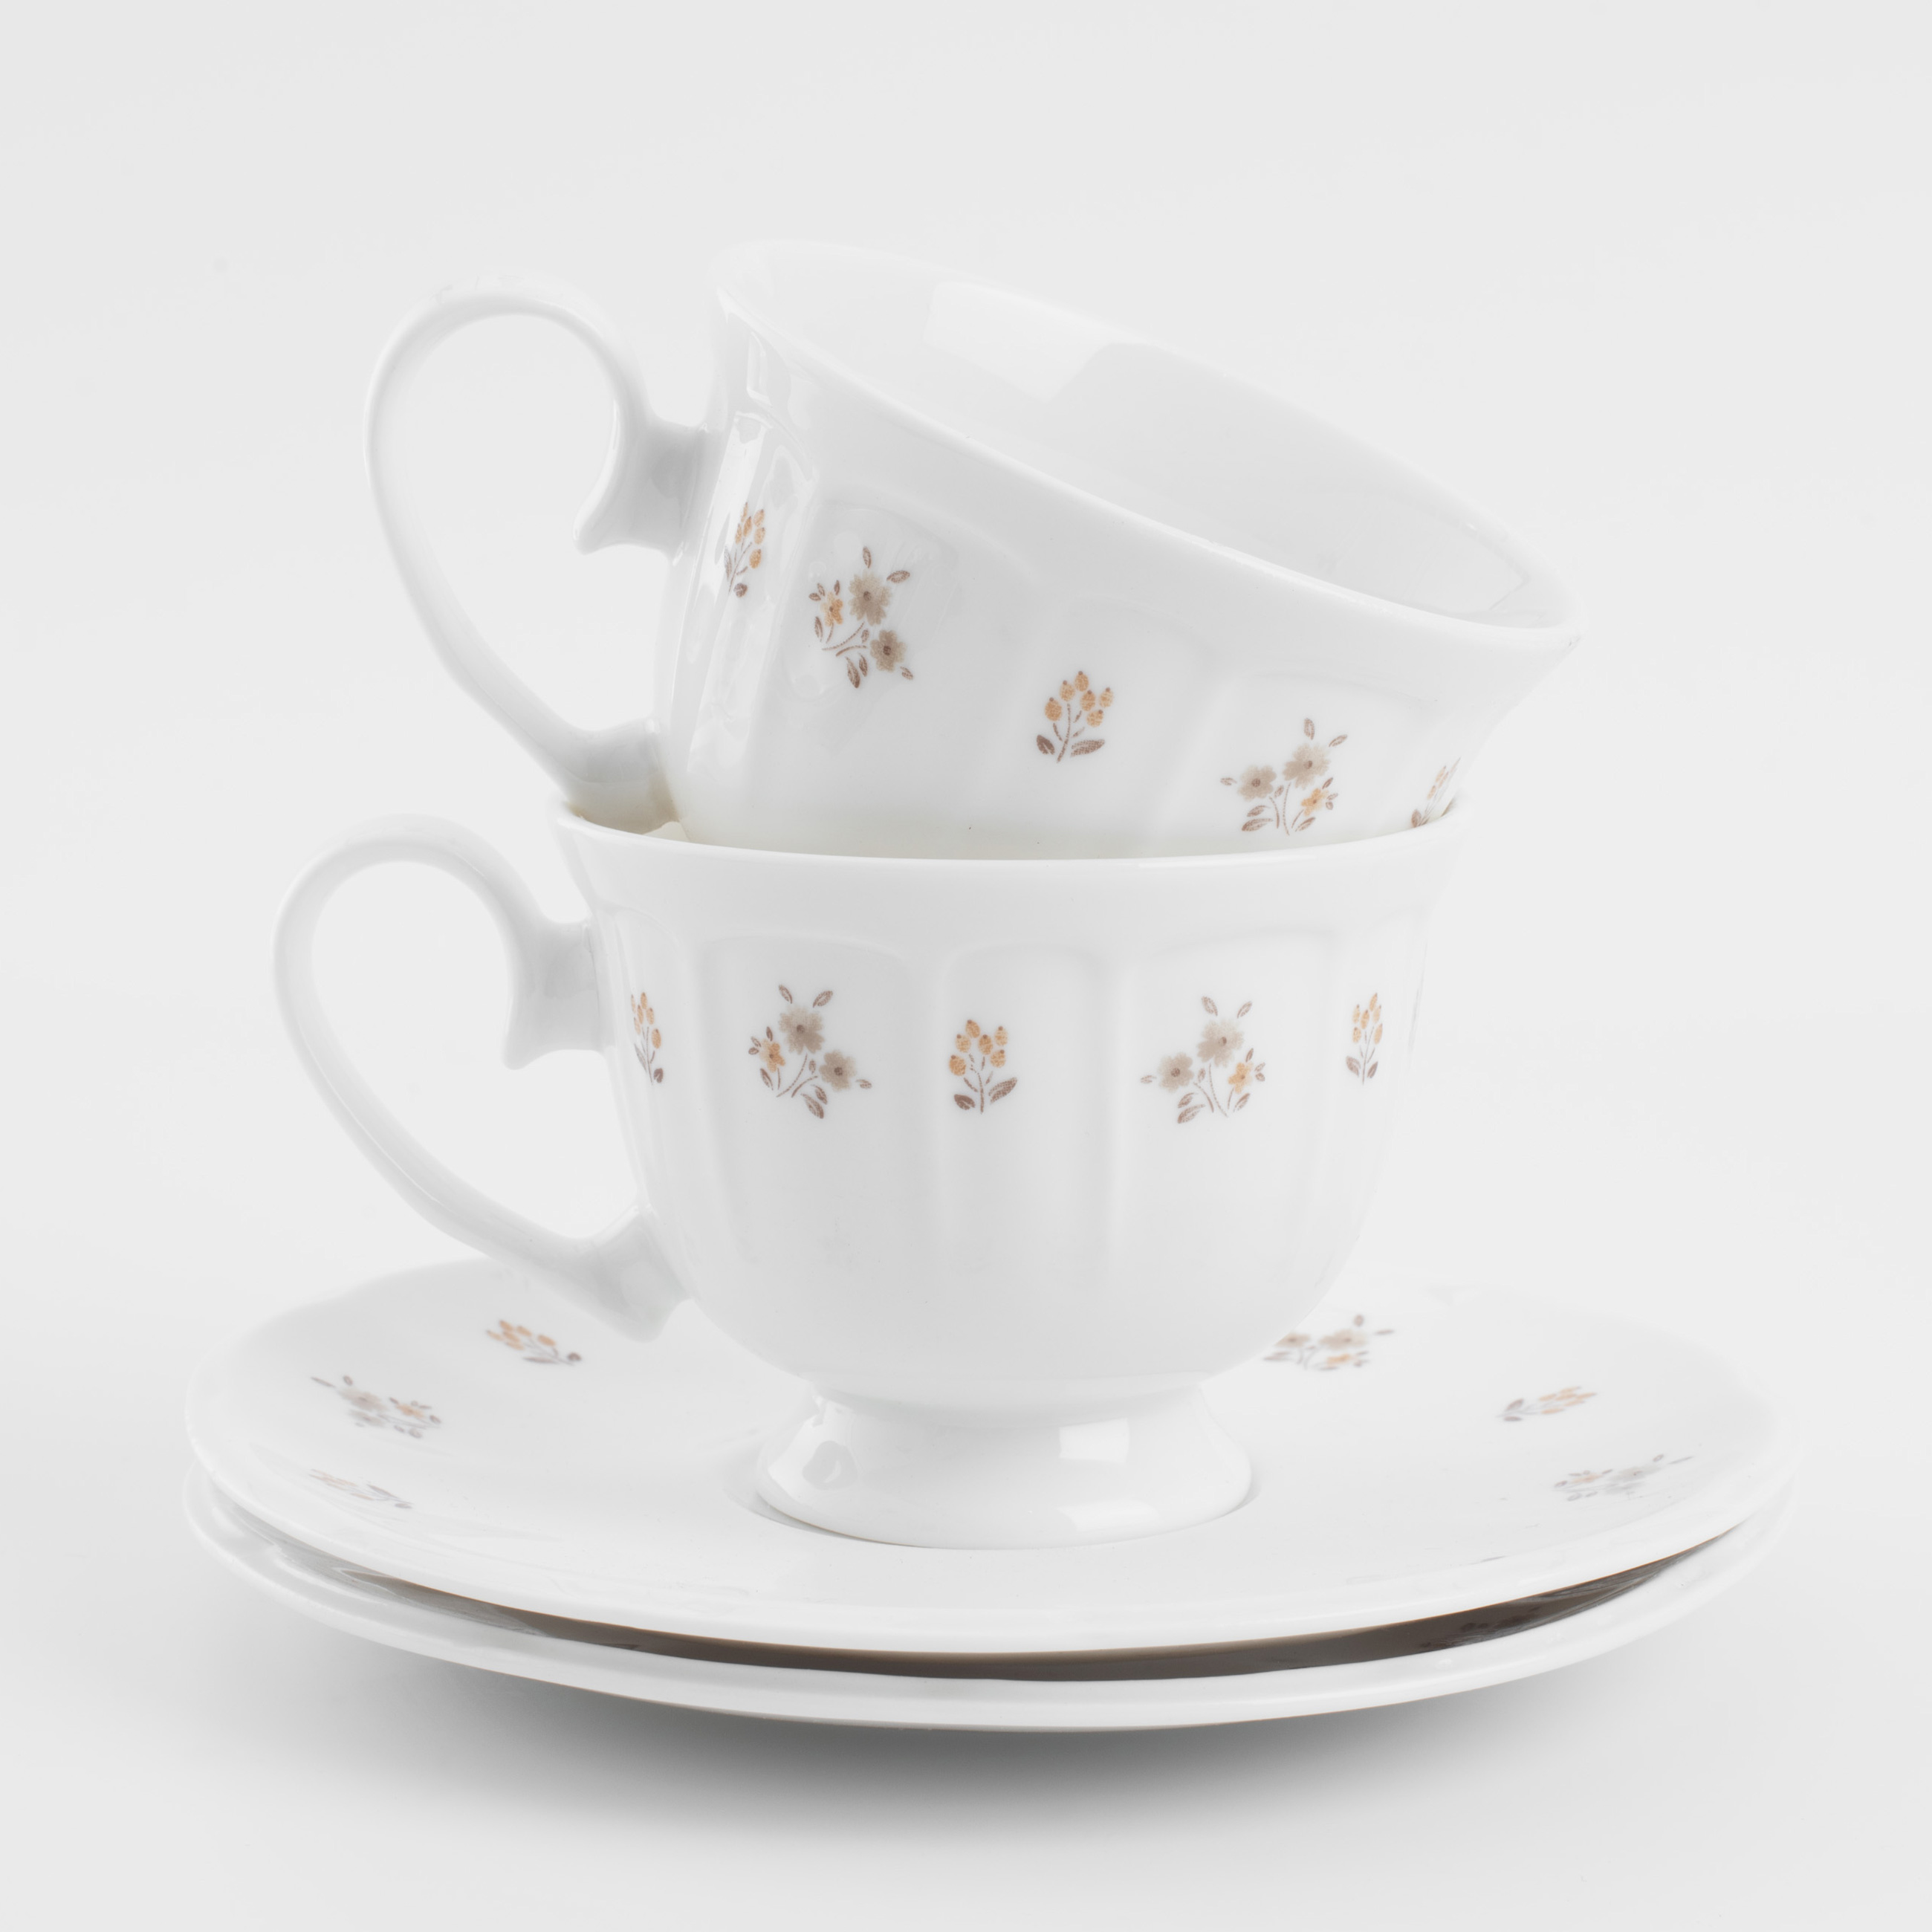 Пара чайная, 2 перс, 4 пр, 180 мл, фарфор N, белая, Винтажные цветы, La flore